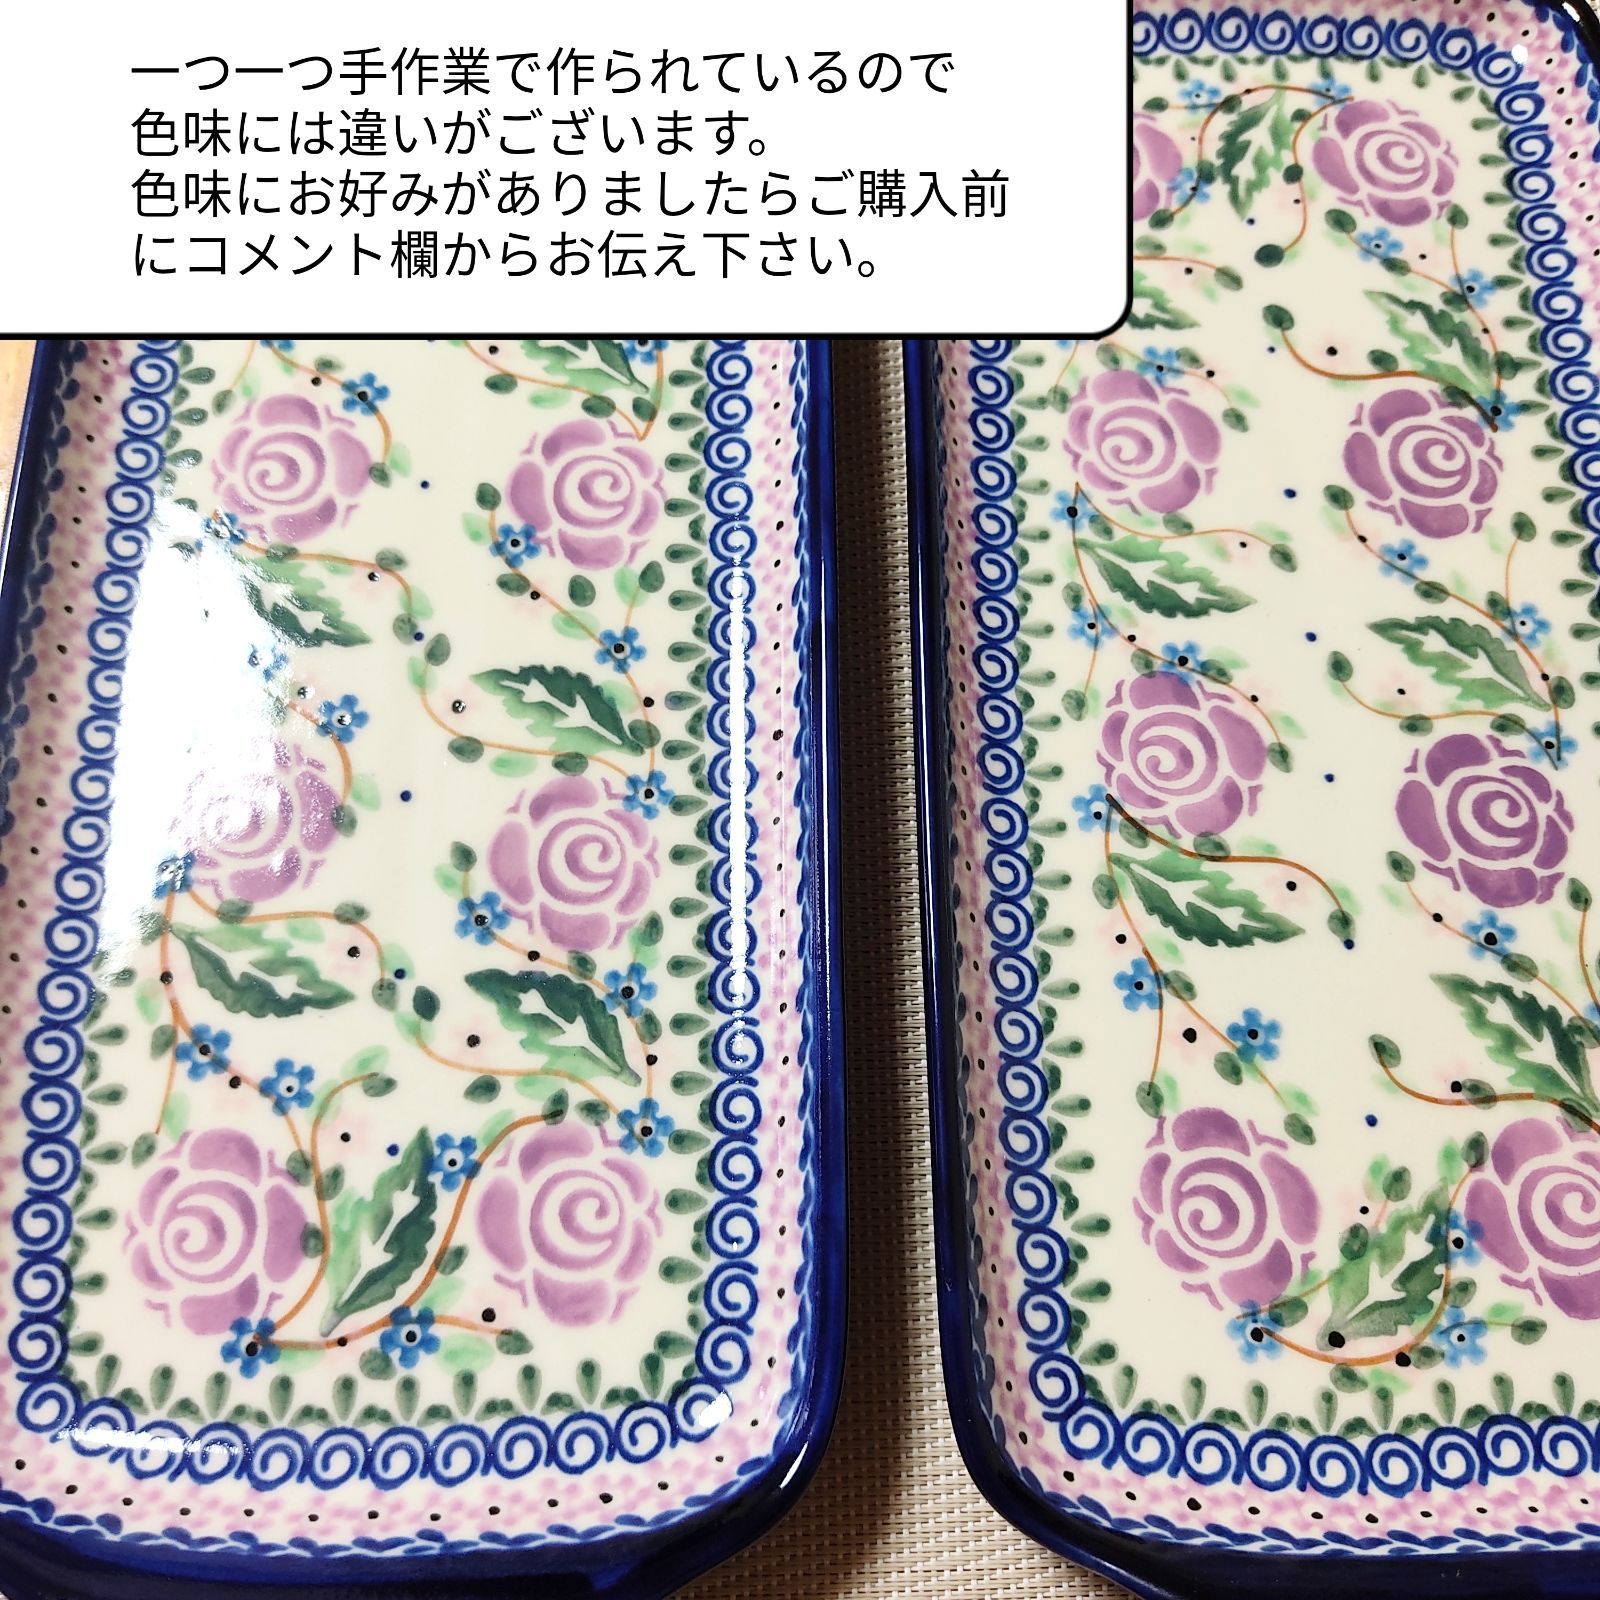 ポーリッシュポタリー ミレナ 紫の薔薇セット♡ - バーベキュー・調理用品